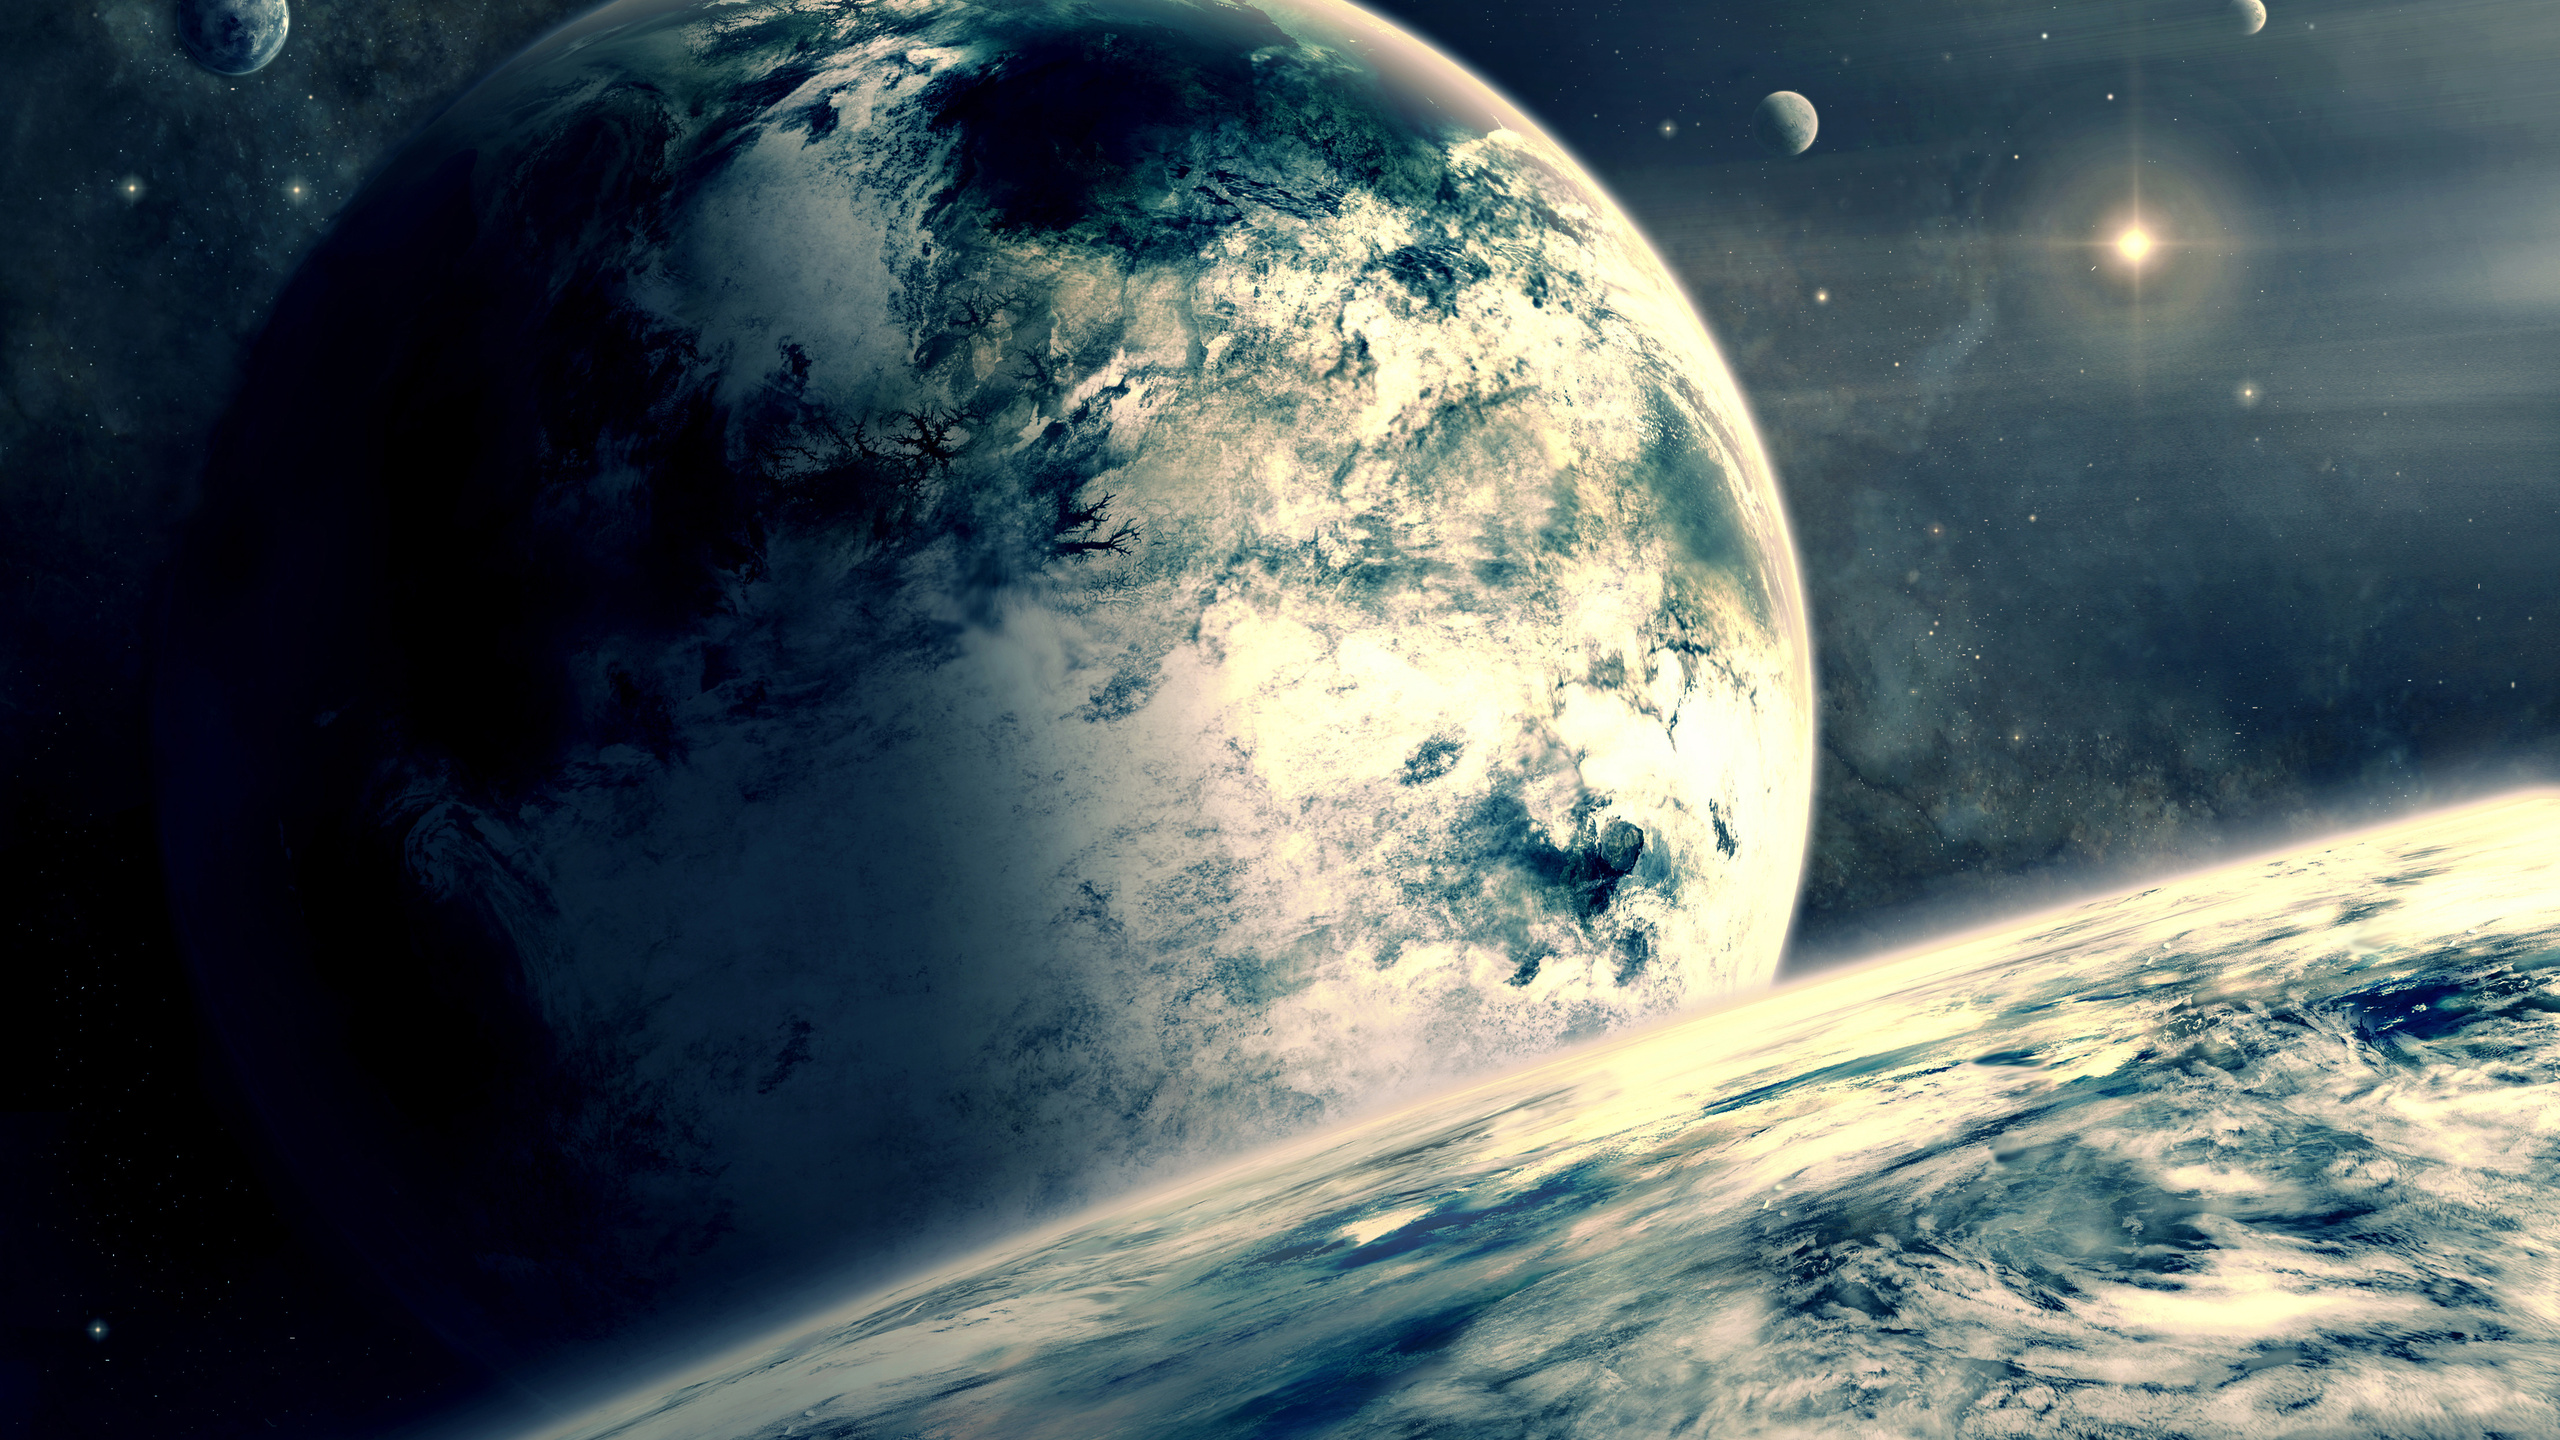 19. Бесплатная картинка для рабочего стола на тему: атмосфера, планеты, облака, Планета Годзилла астрономия